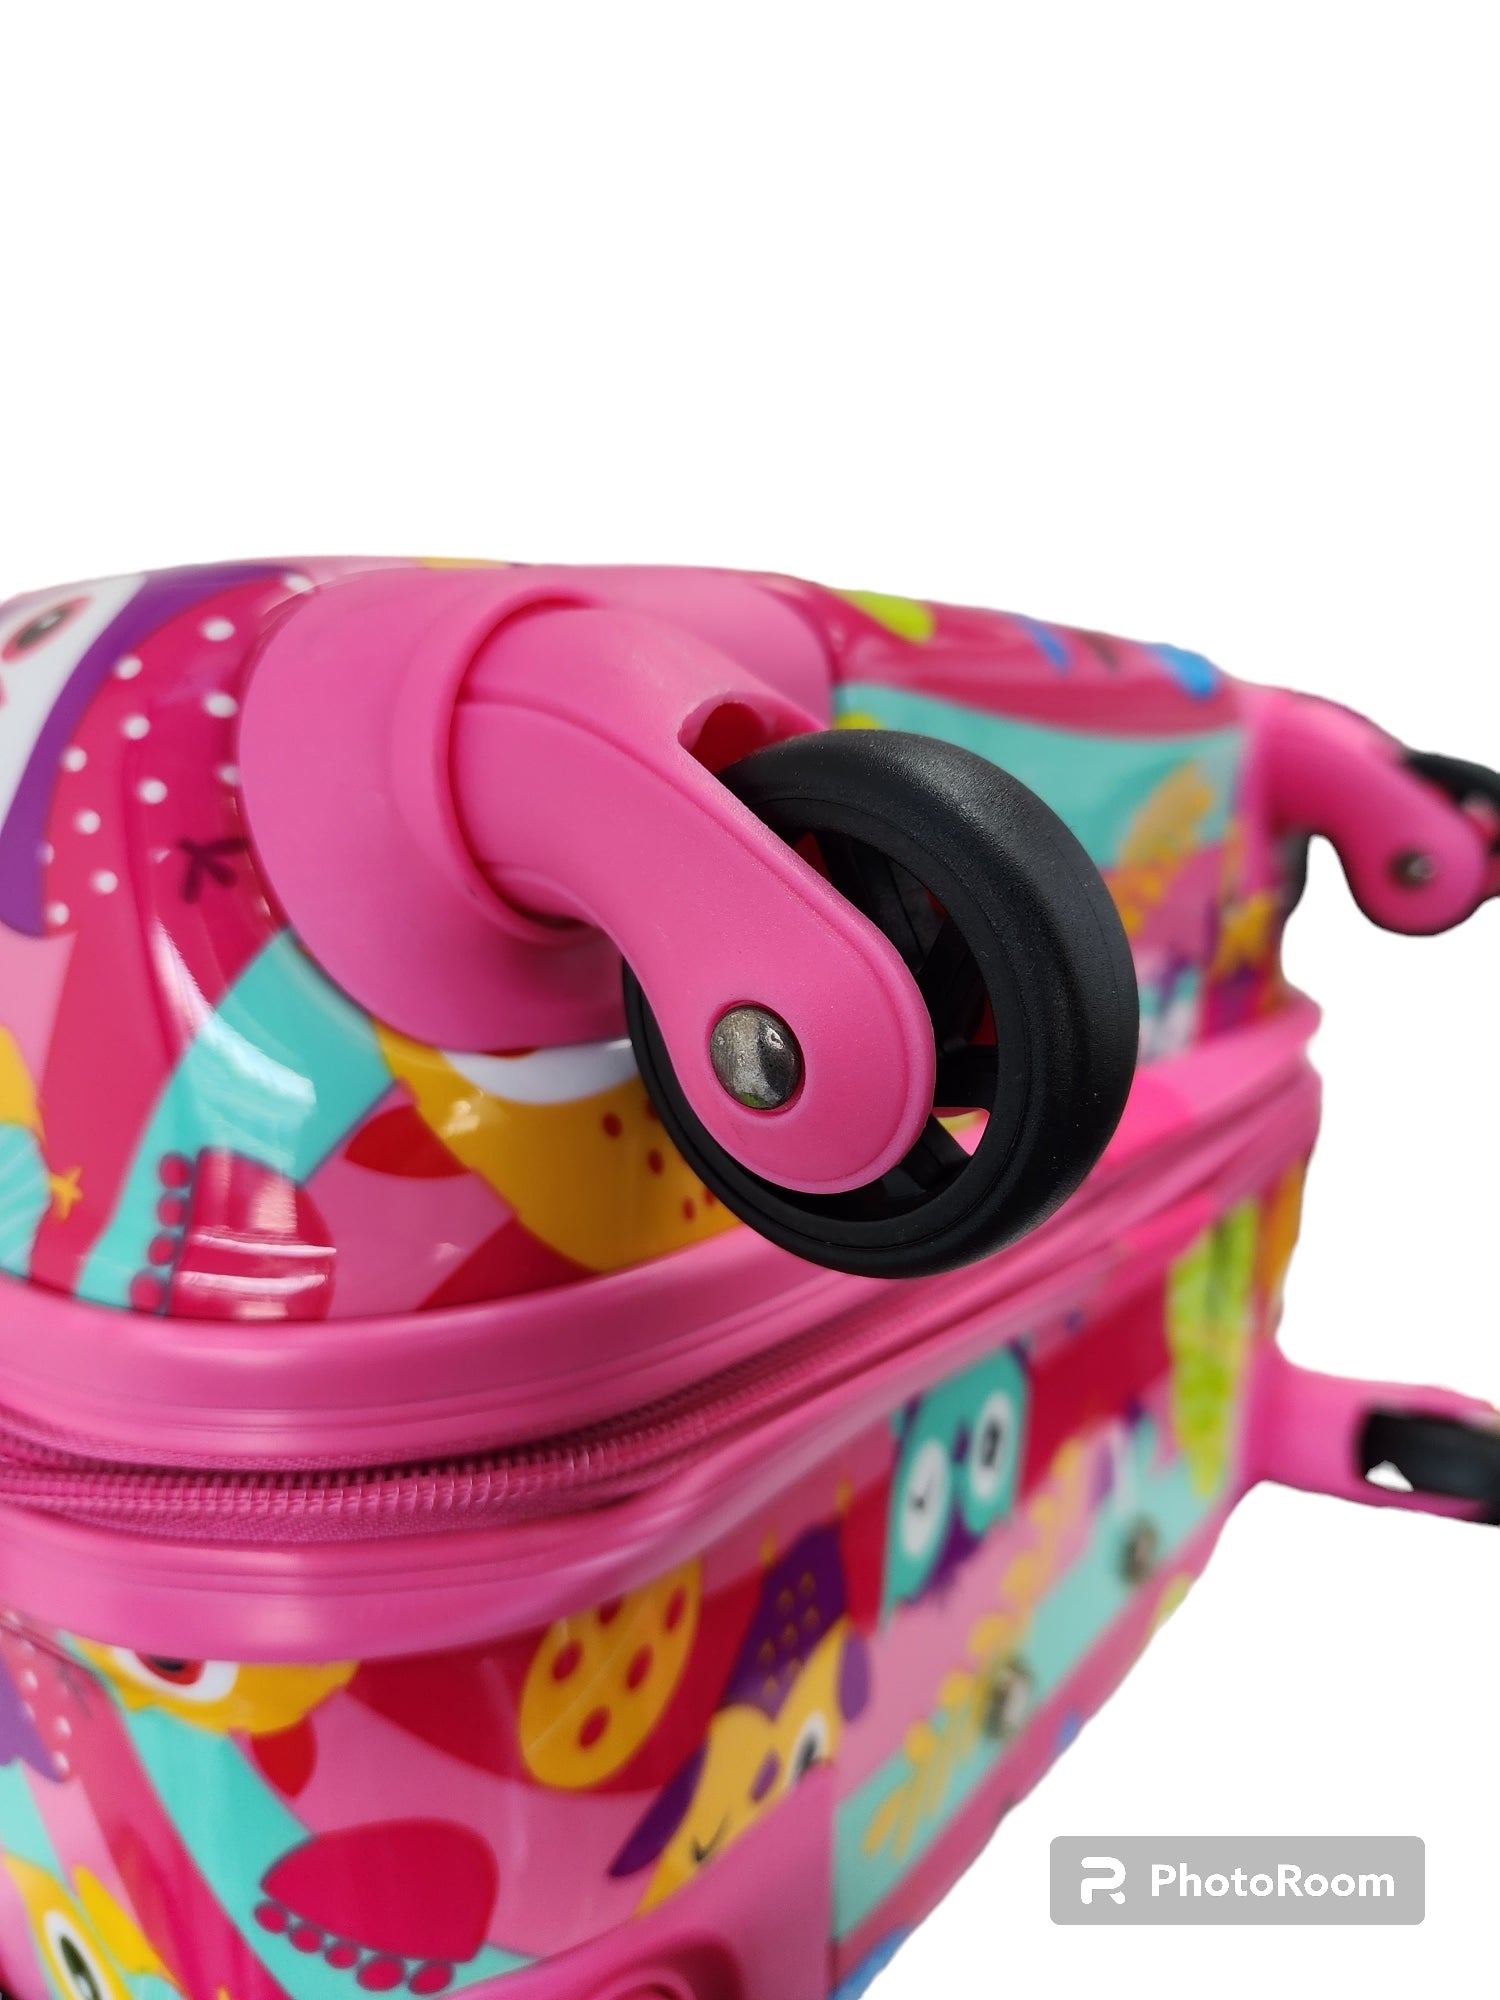 Kidz Bagz - 48cm Owl spinner suitcase - Pink-5